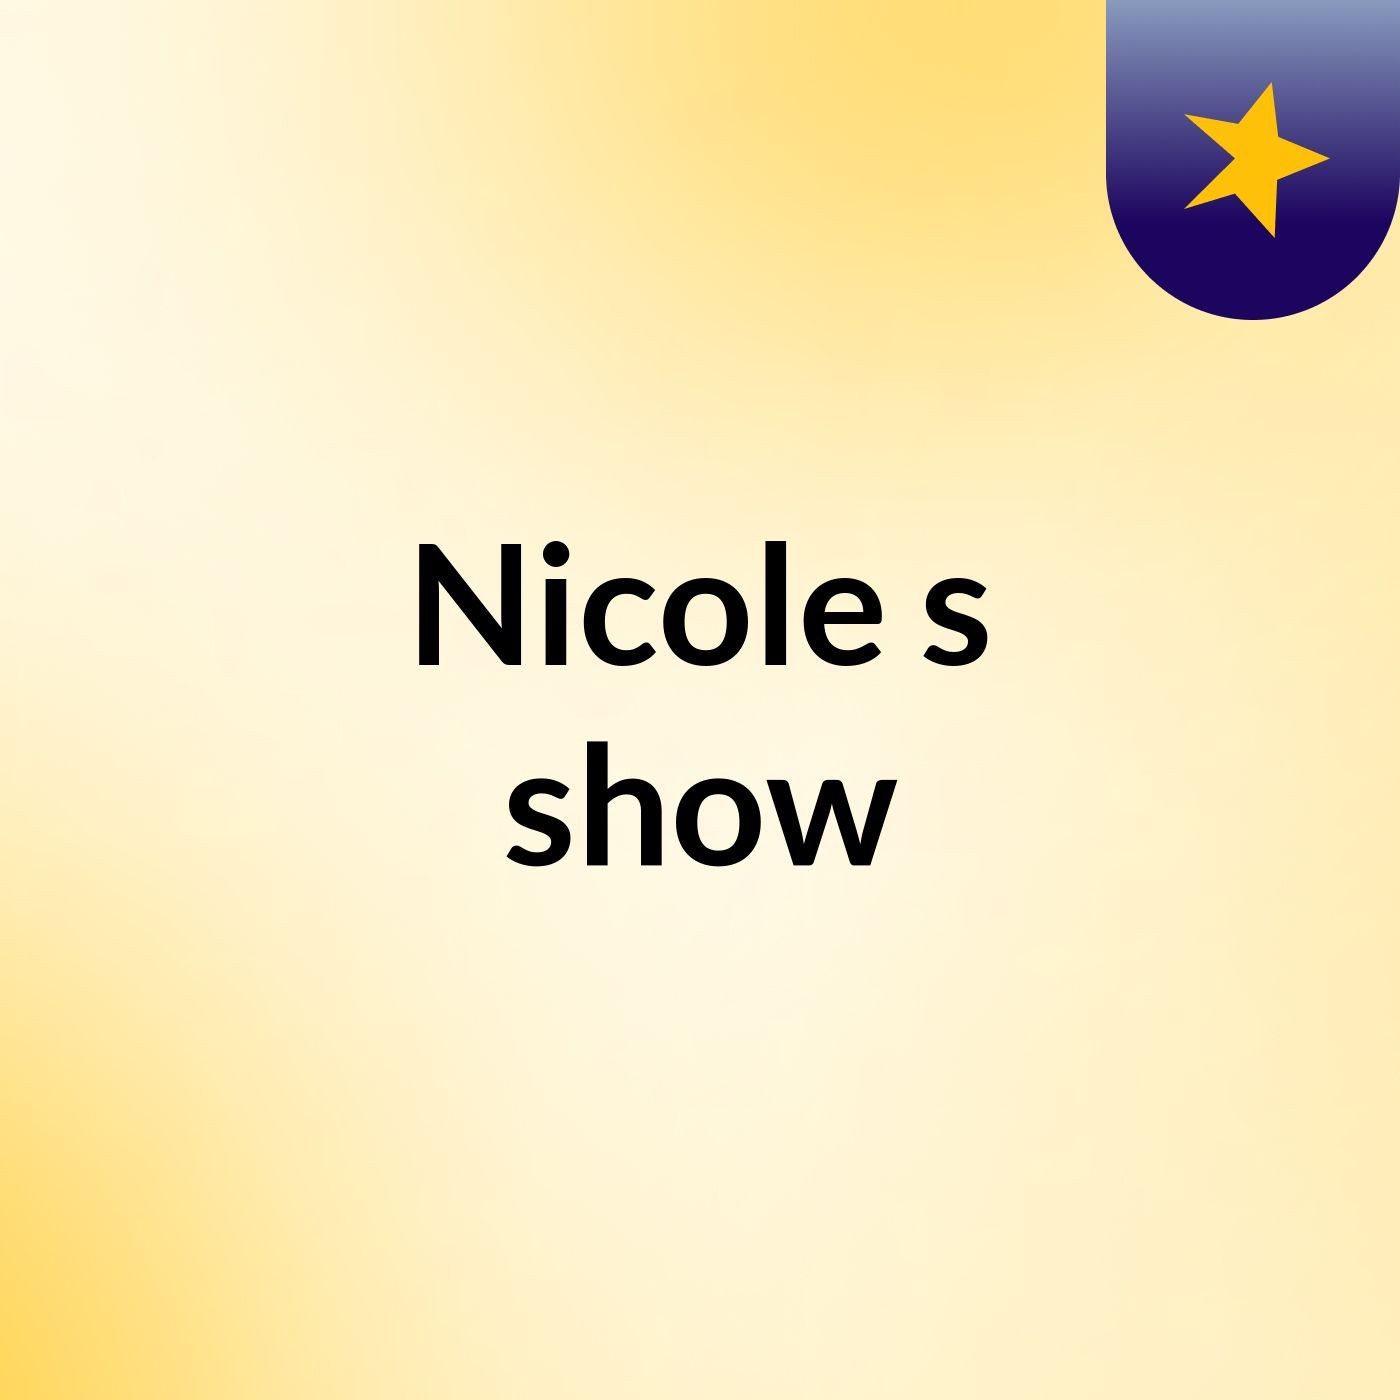 Nicole's show